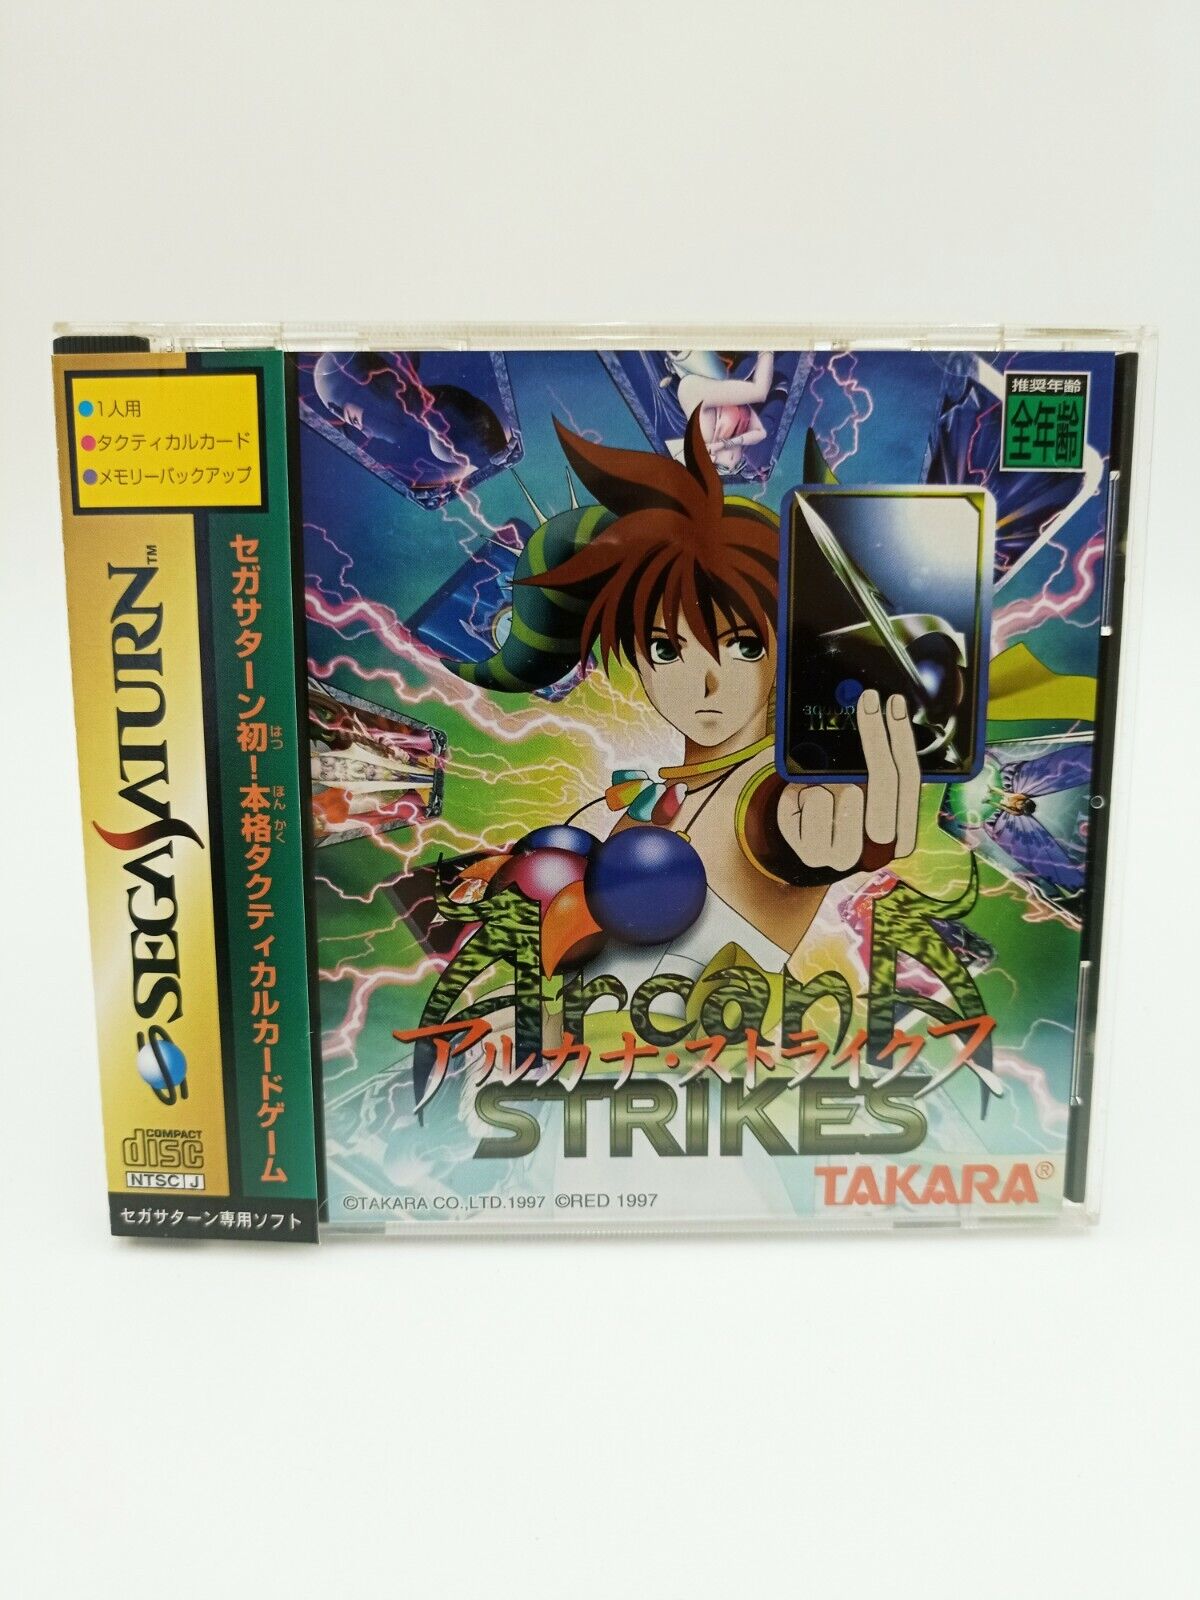 Sega Saturn - Arcana Strikes - Takara - Japon